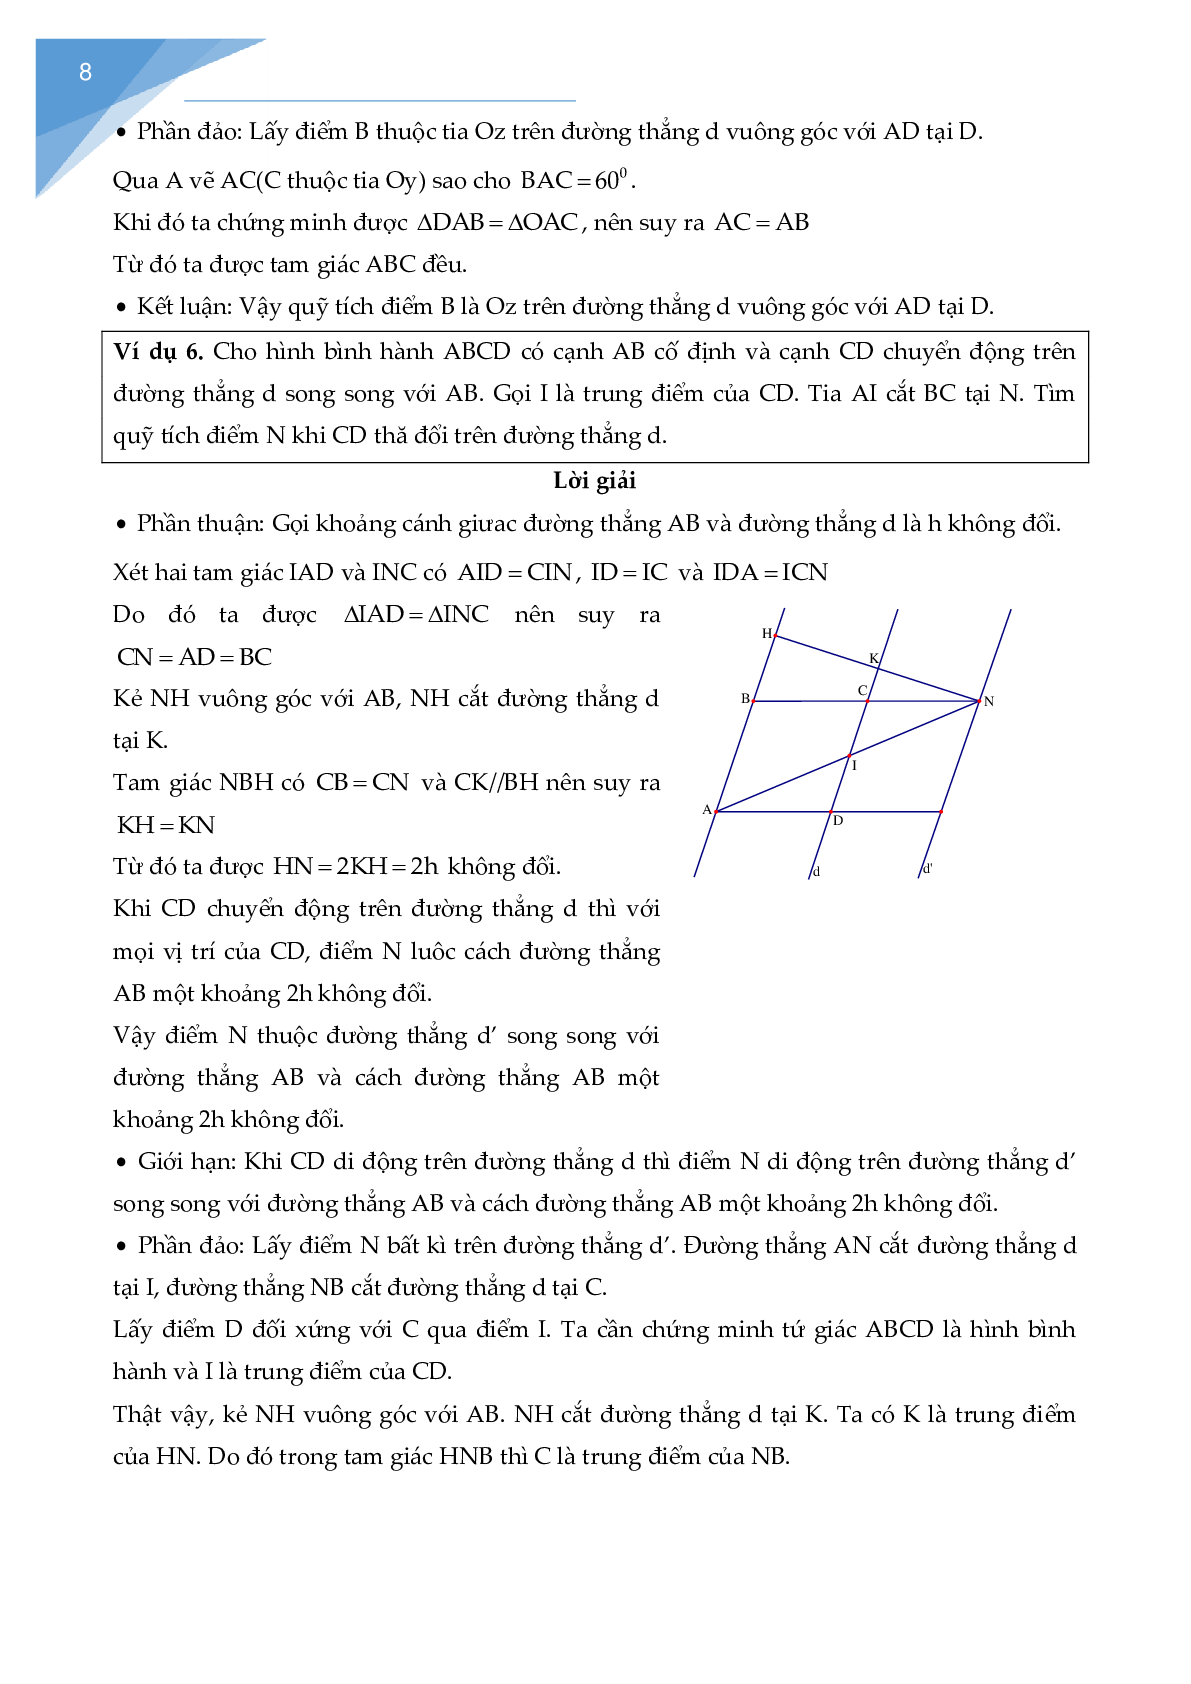 Chuyên đề các bài toán quỹ tích - tập hợp điểm (trang 9)